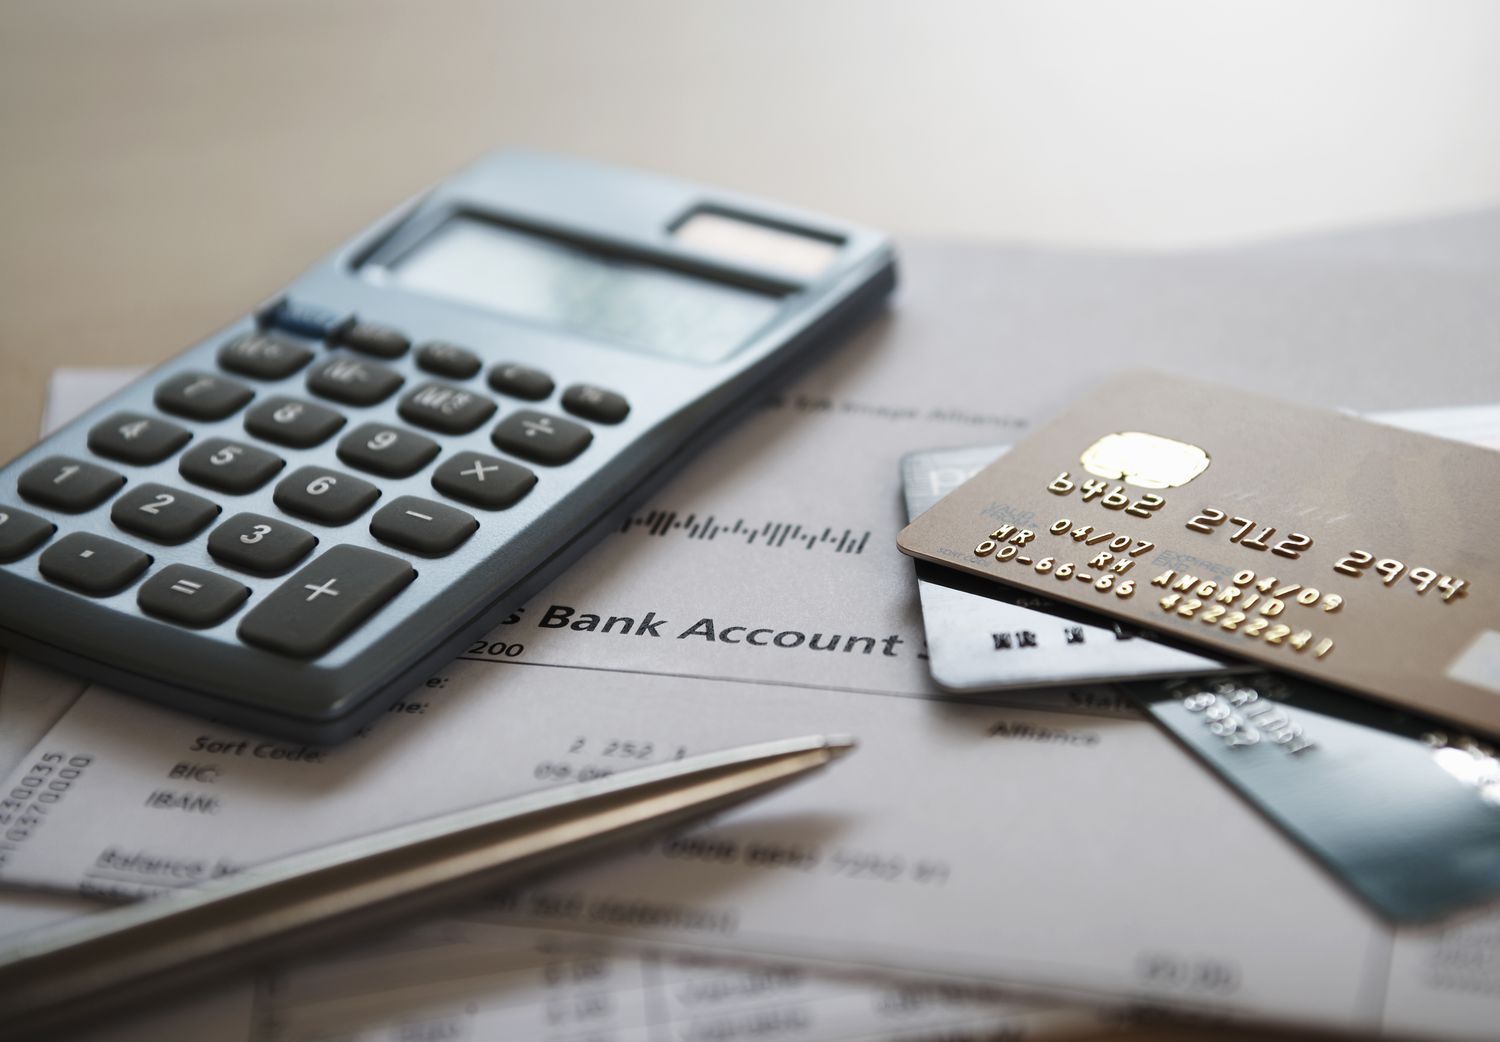 发卡人得采用调整余额法计算财务费用之信用卡及对账单。